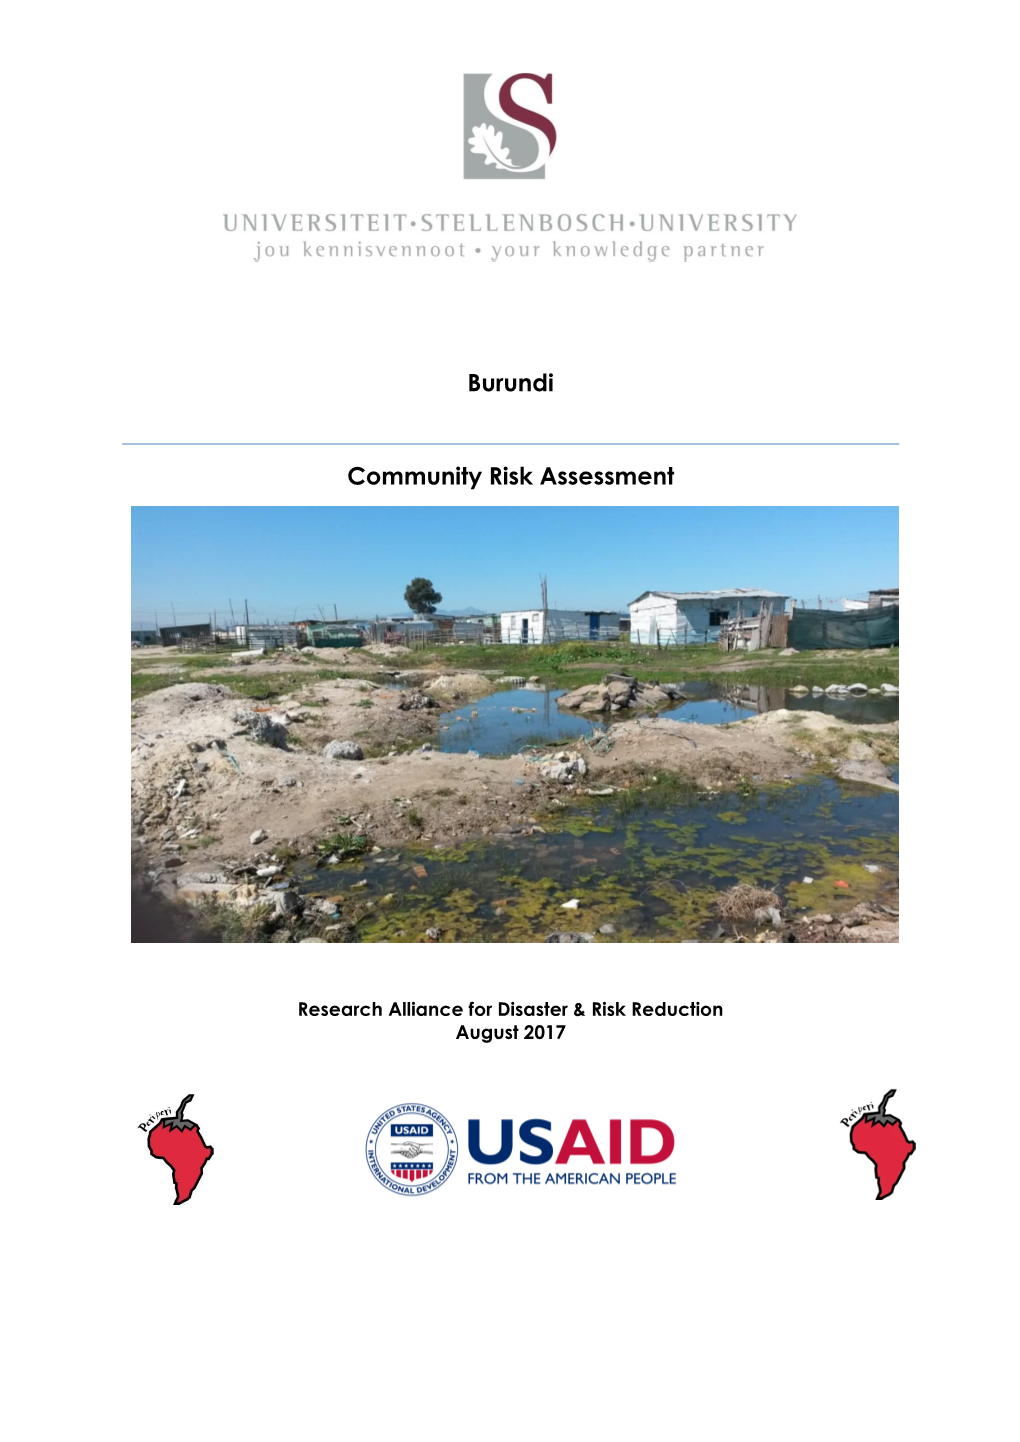 Burundi Community Risk Assessment